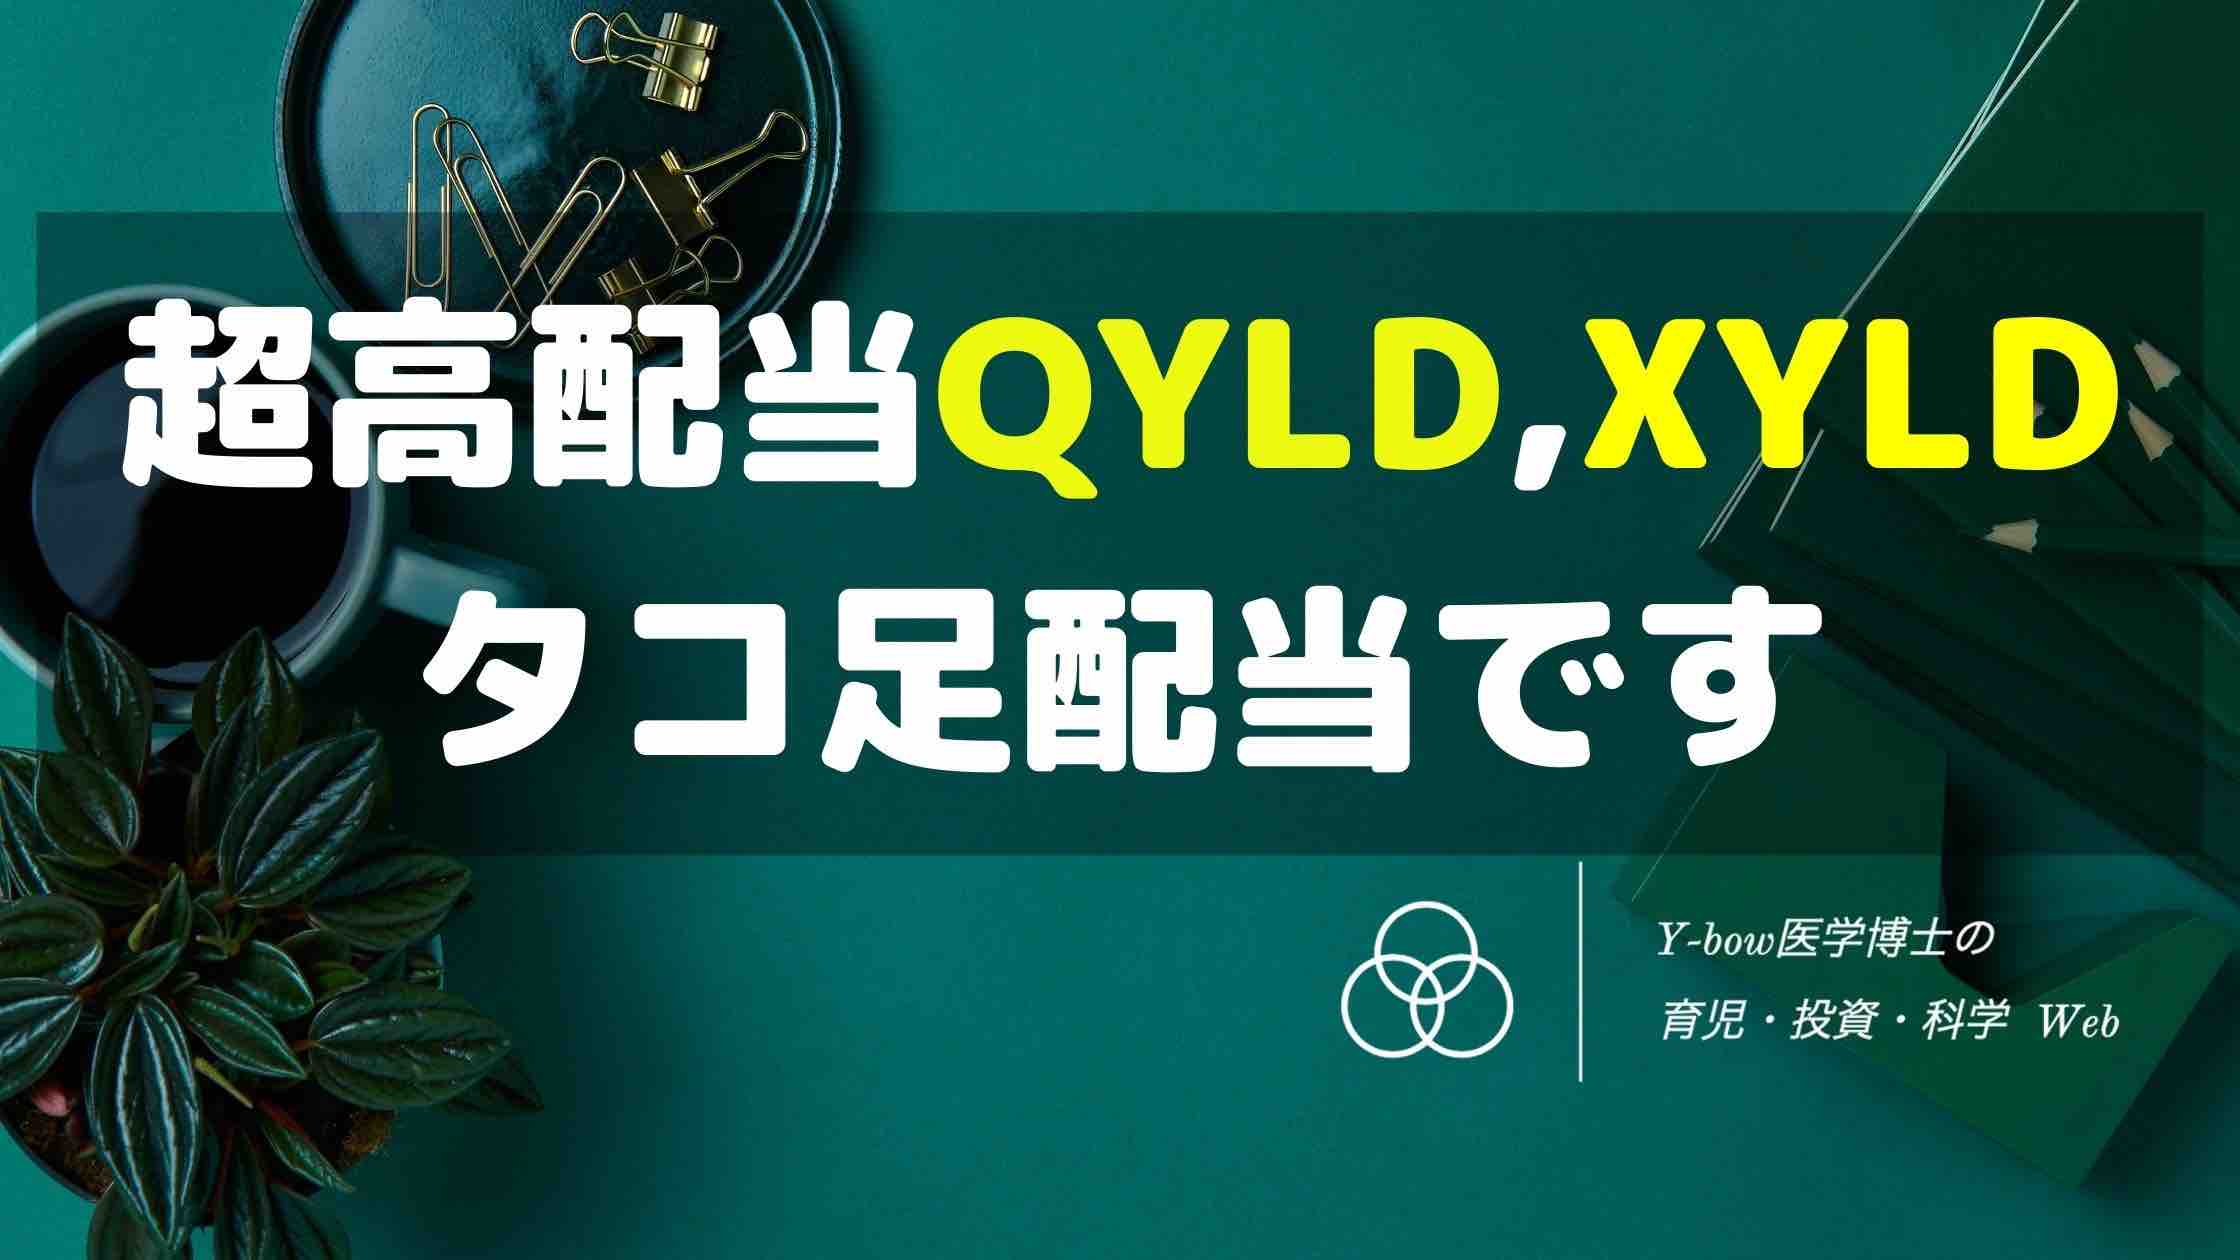 QYLD-XYLD